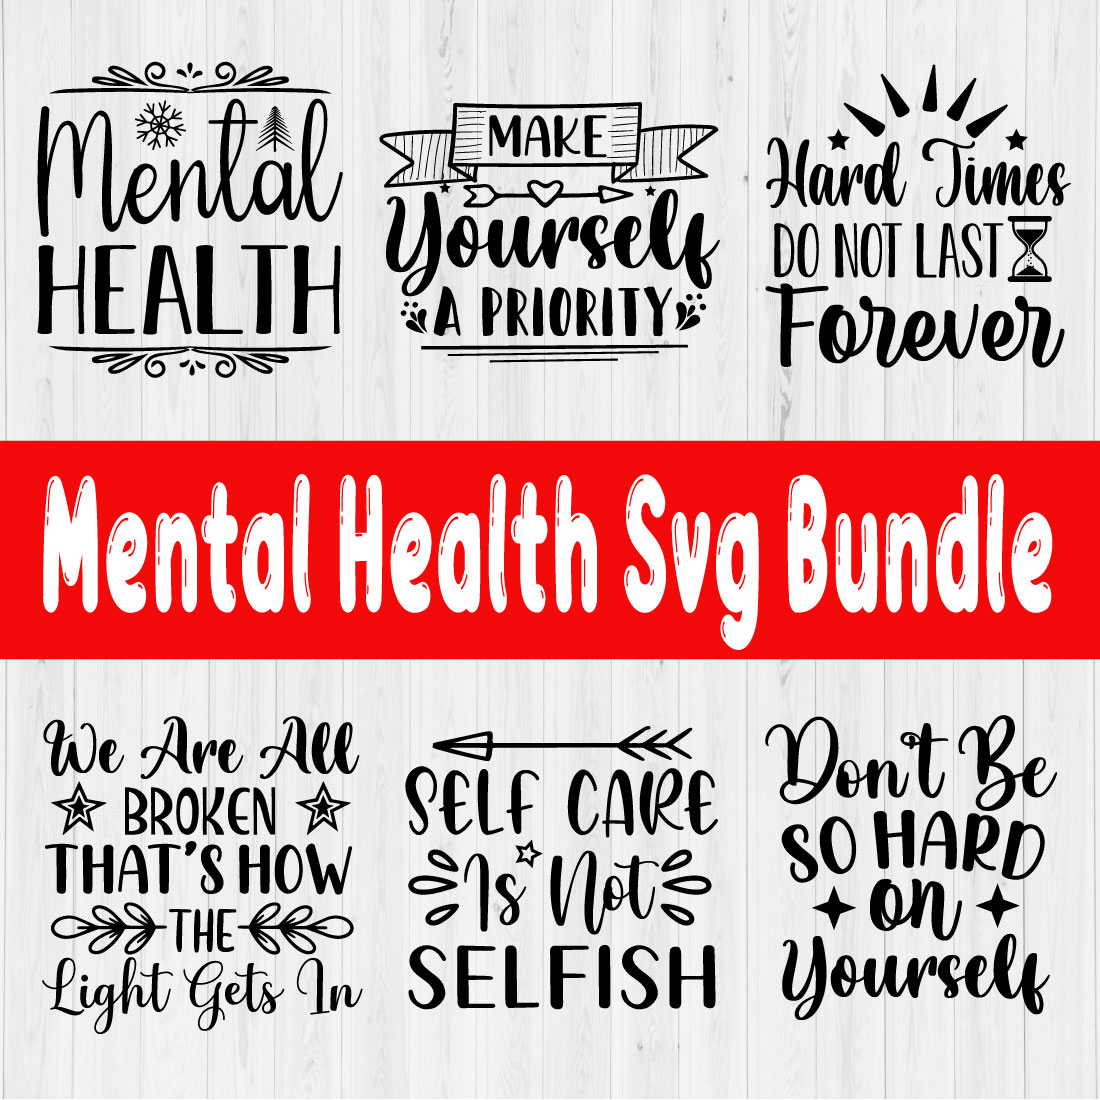 Mental Health Svg Bundle Vol1 cover image.